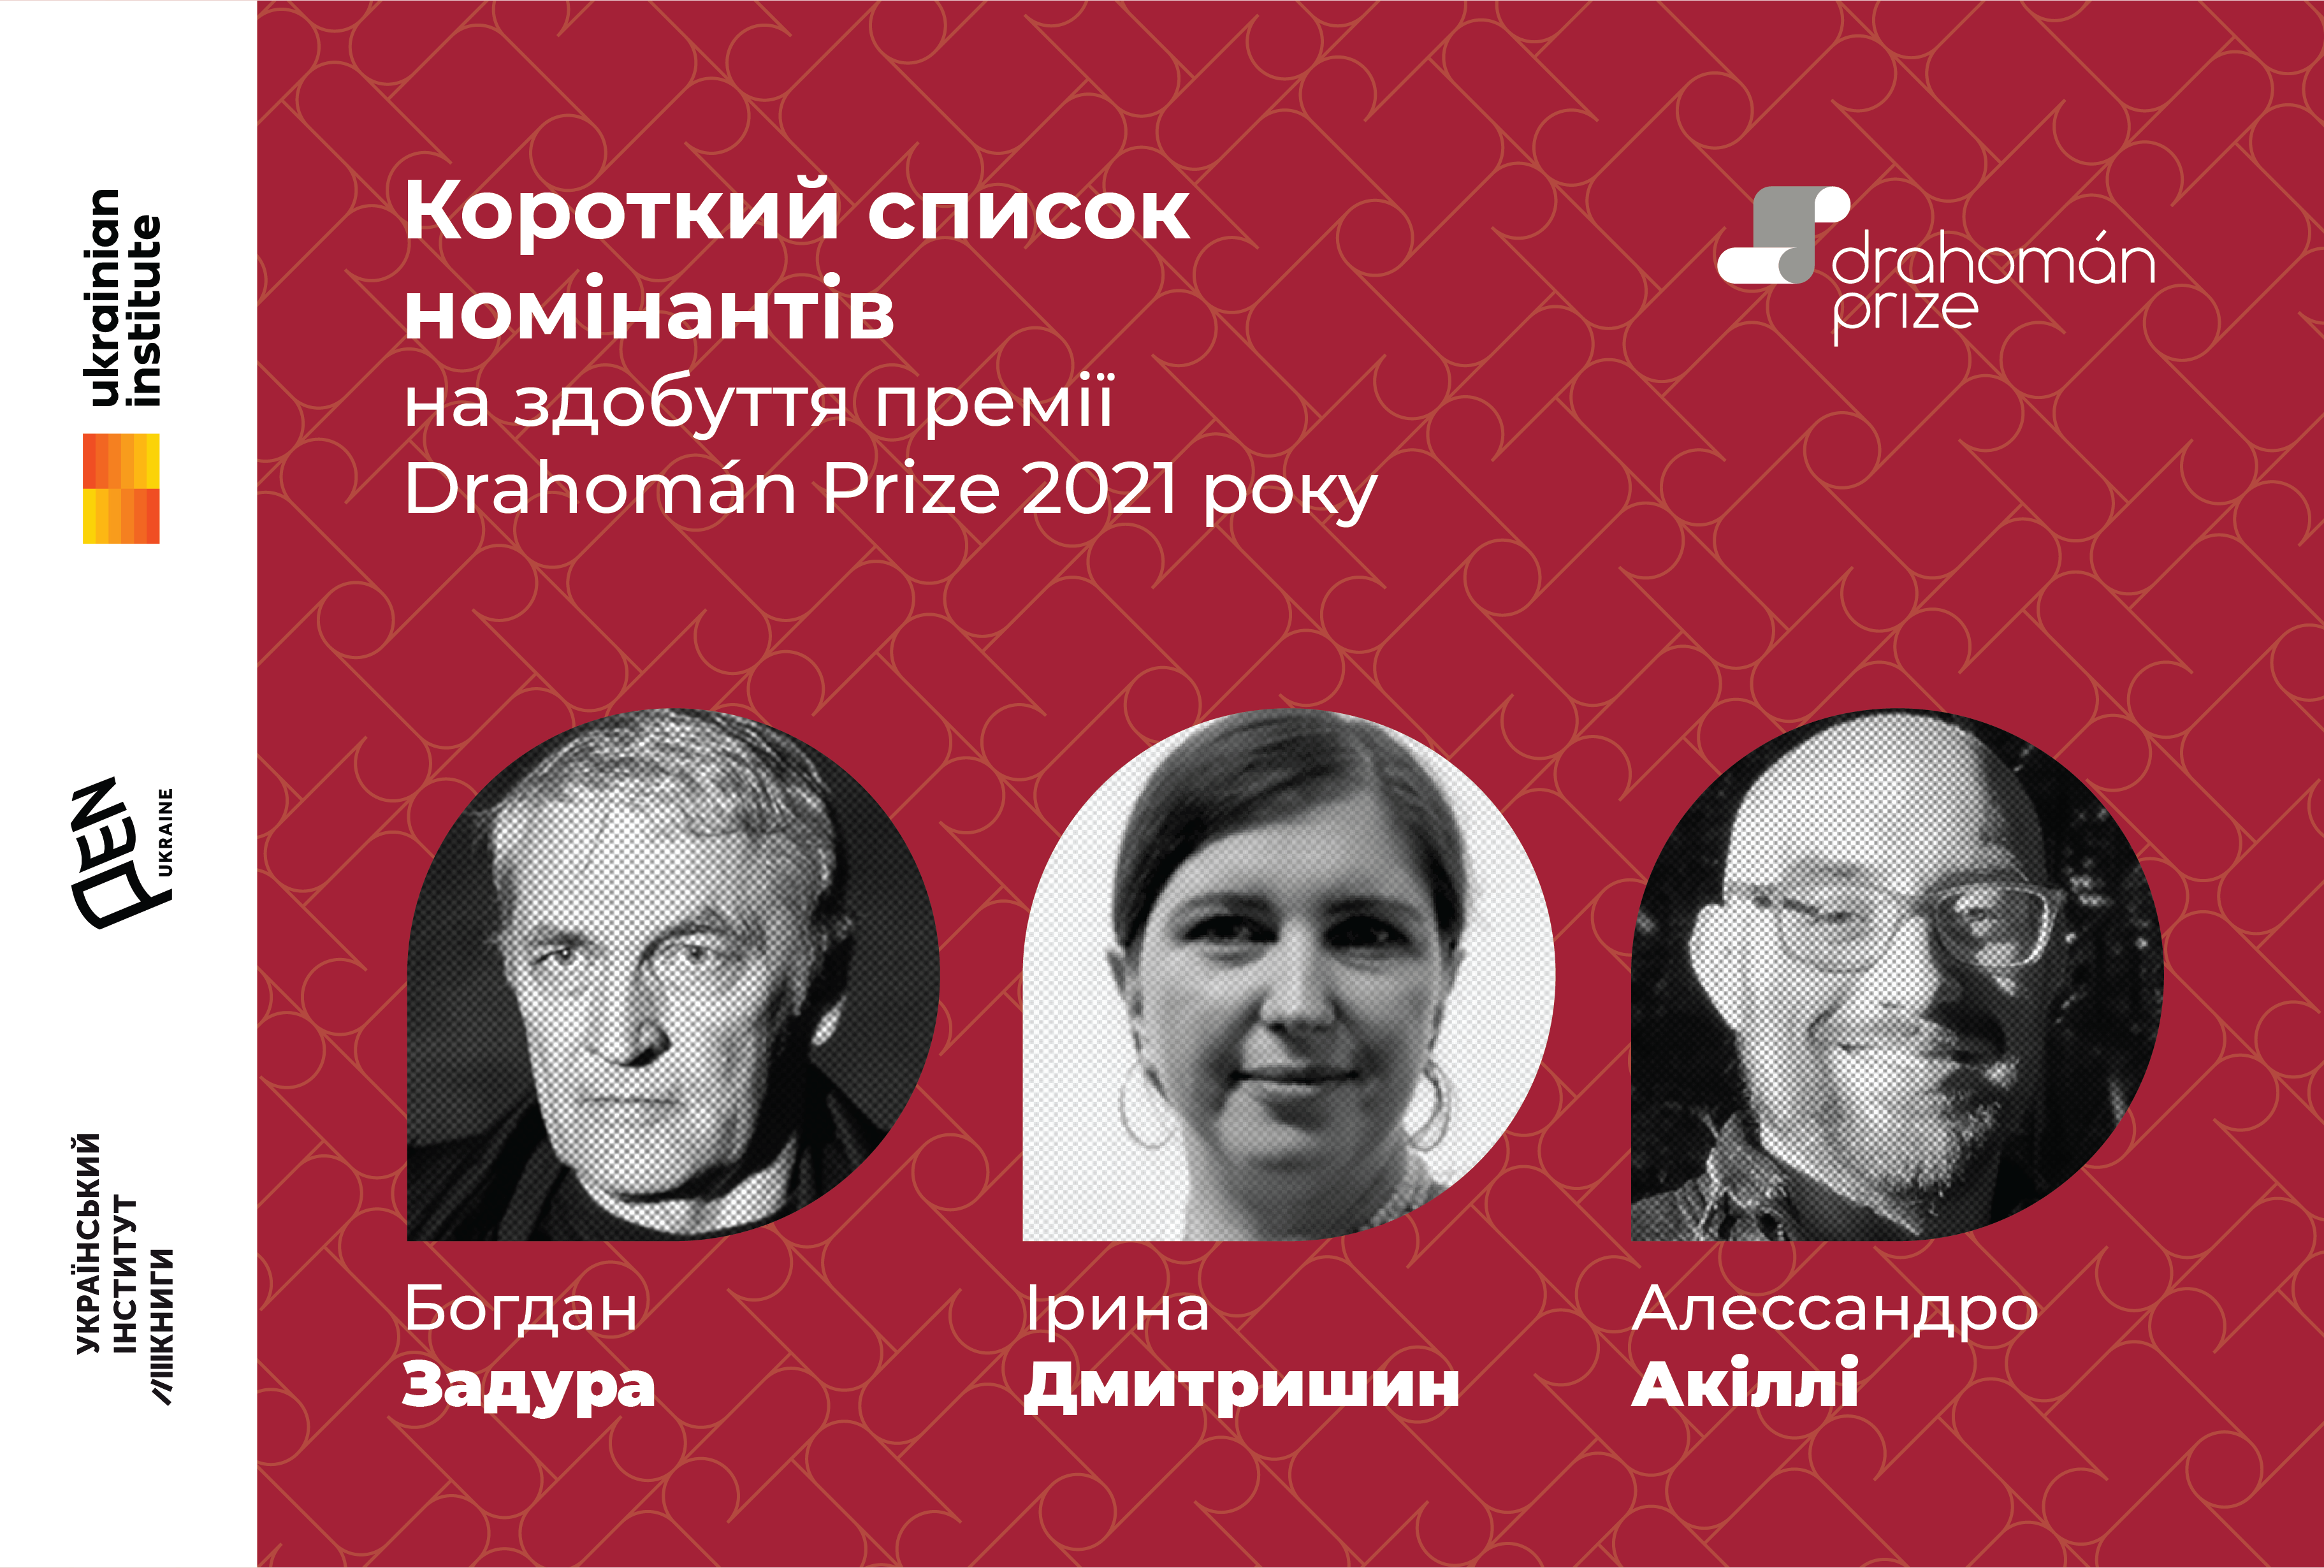 Оголошено короткий список номінантів на здобуття премії Drahomán Prize 2021 року